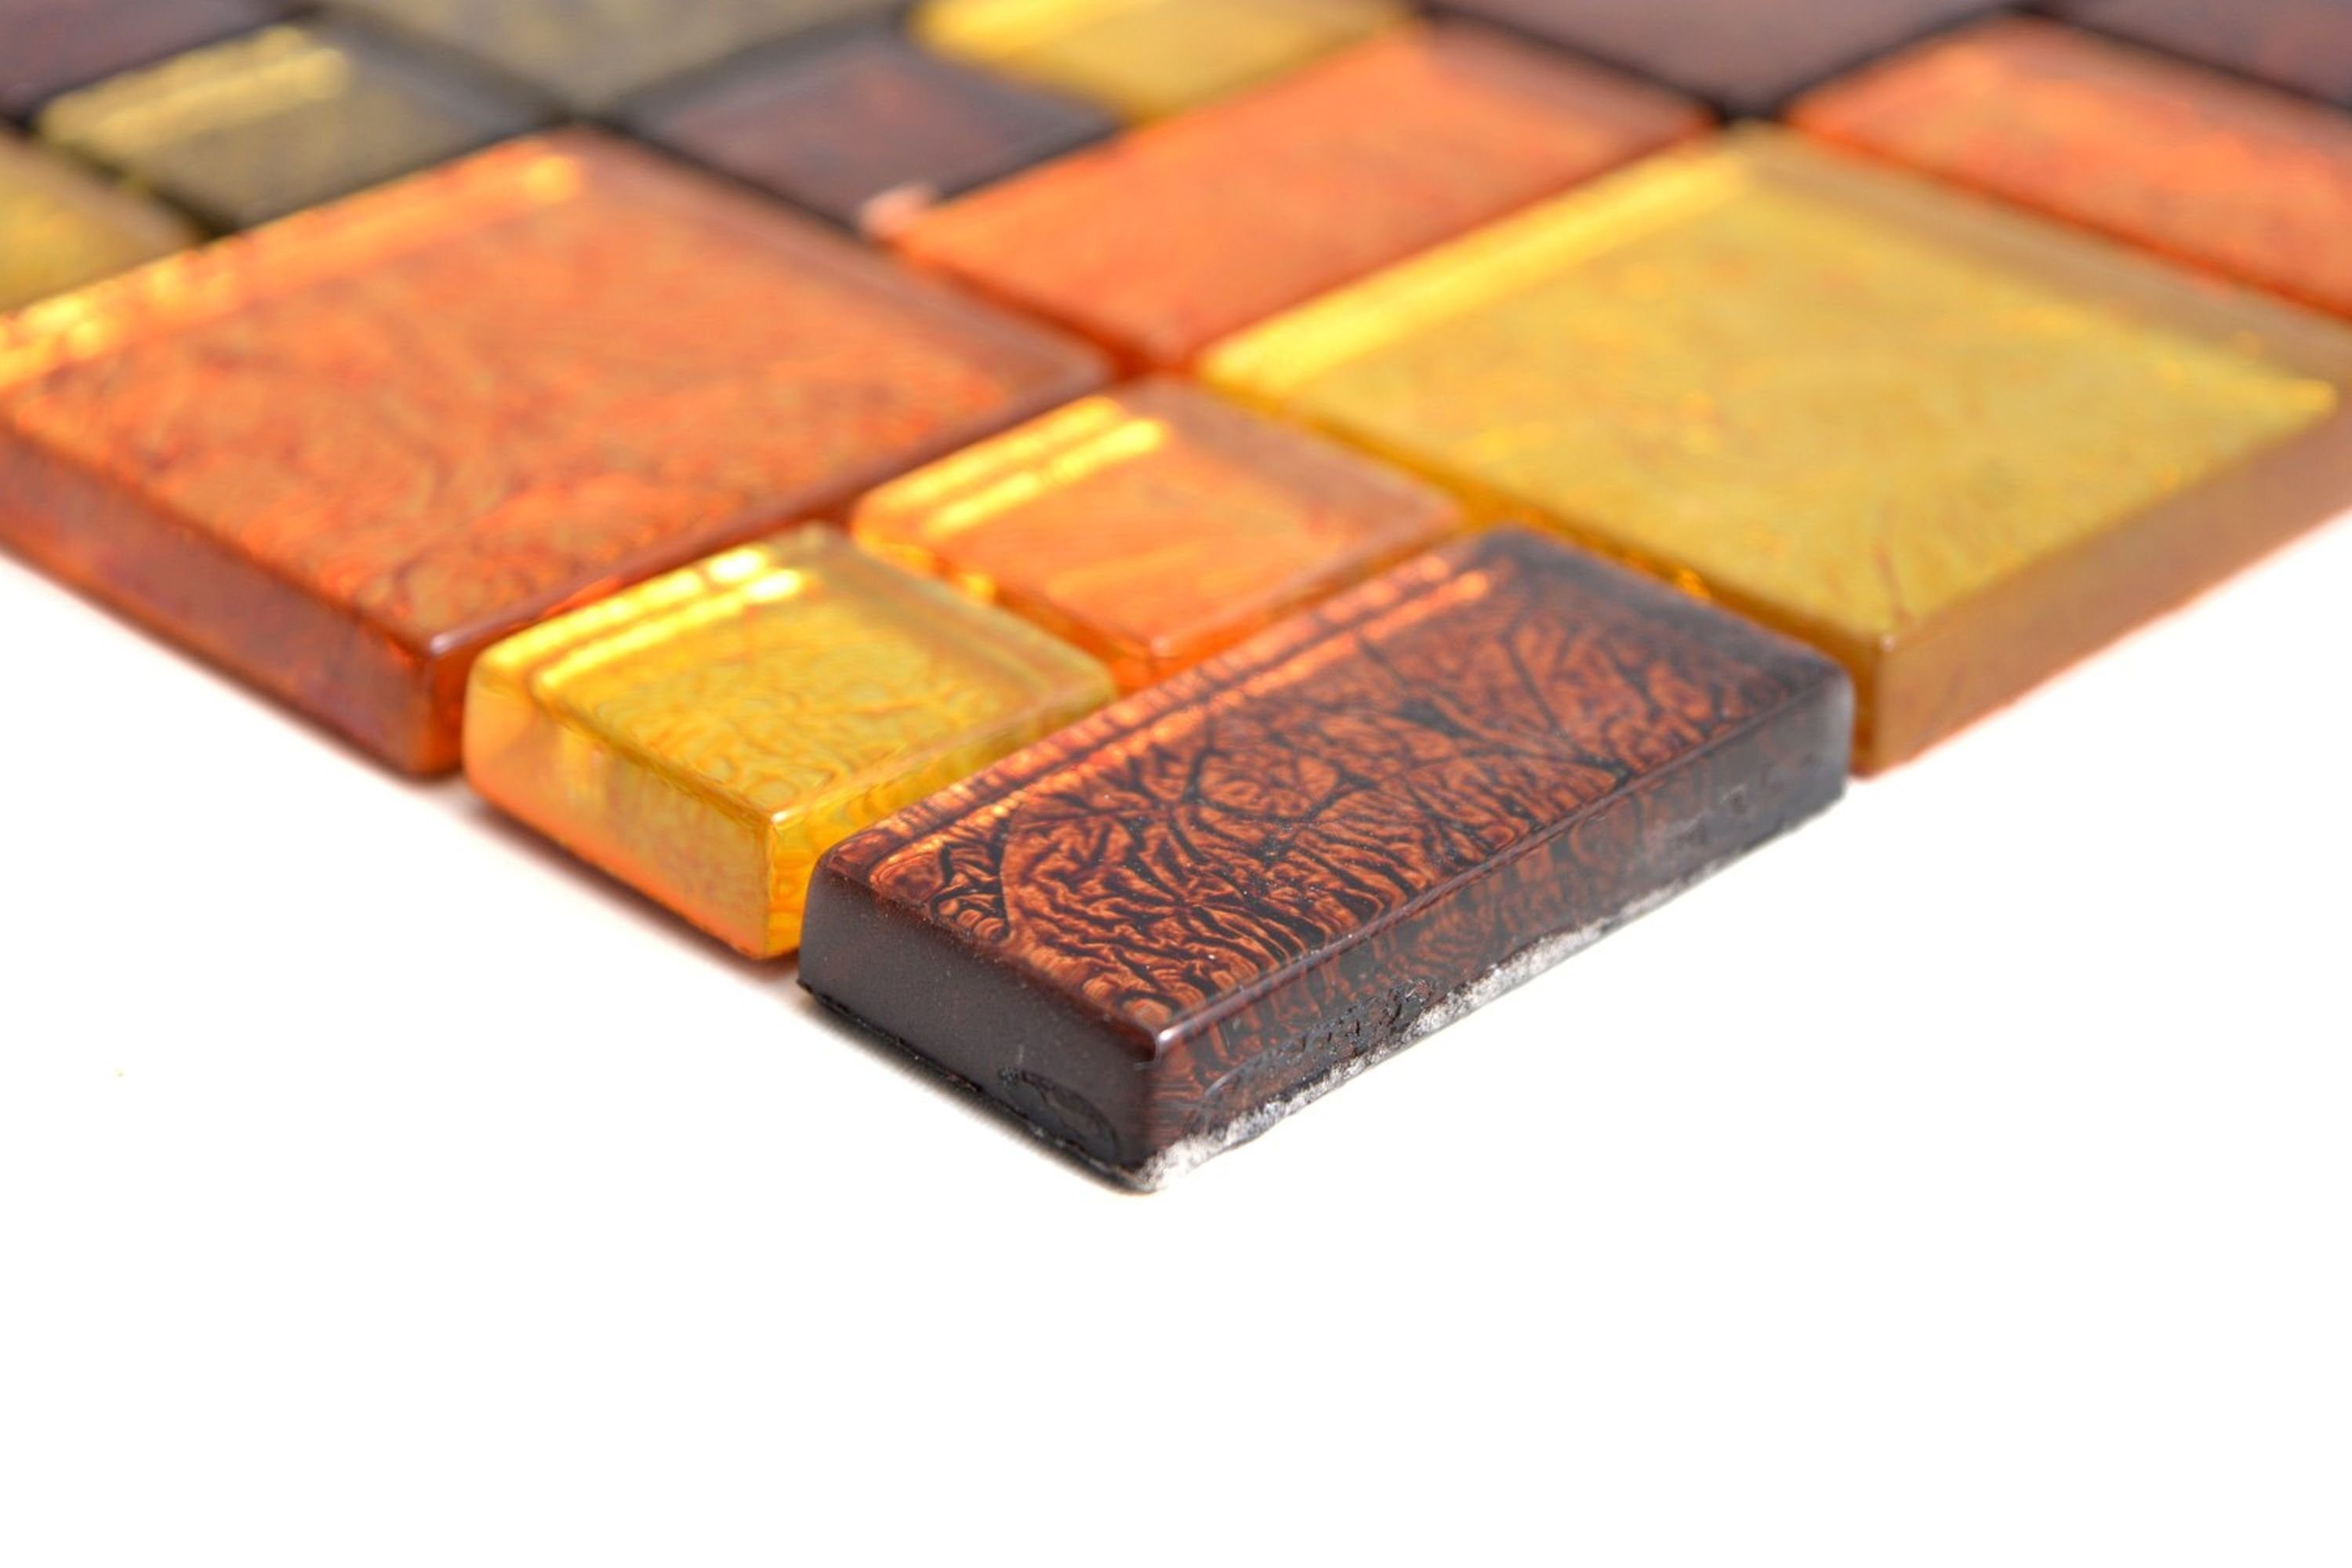 Mosani Mosaikfliesen Glasmosaik gold Mosaik Kombintation Fliesenspiegel orange Struktur